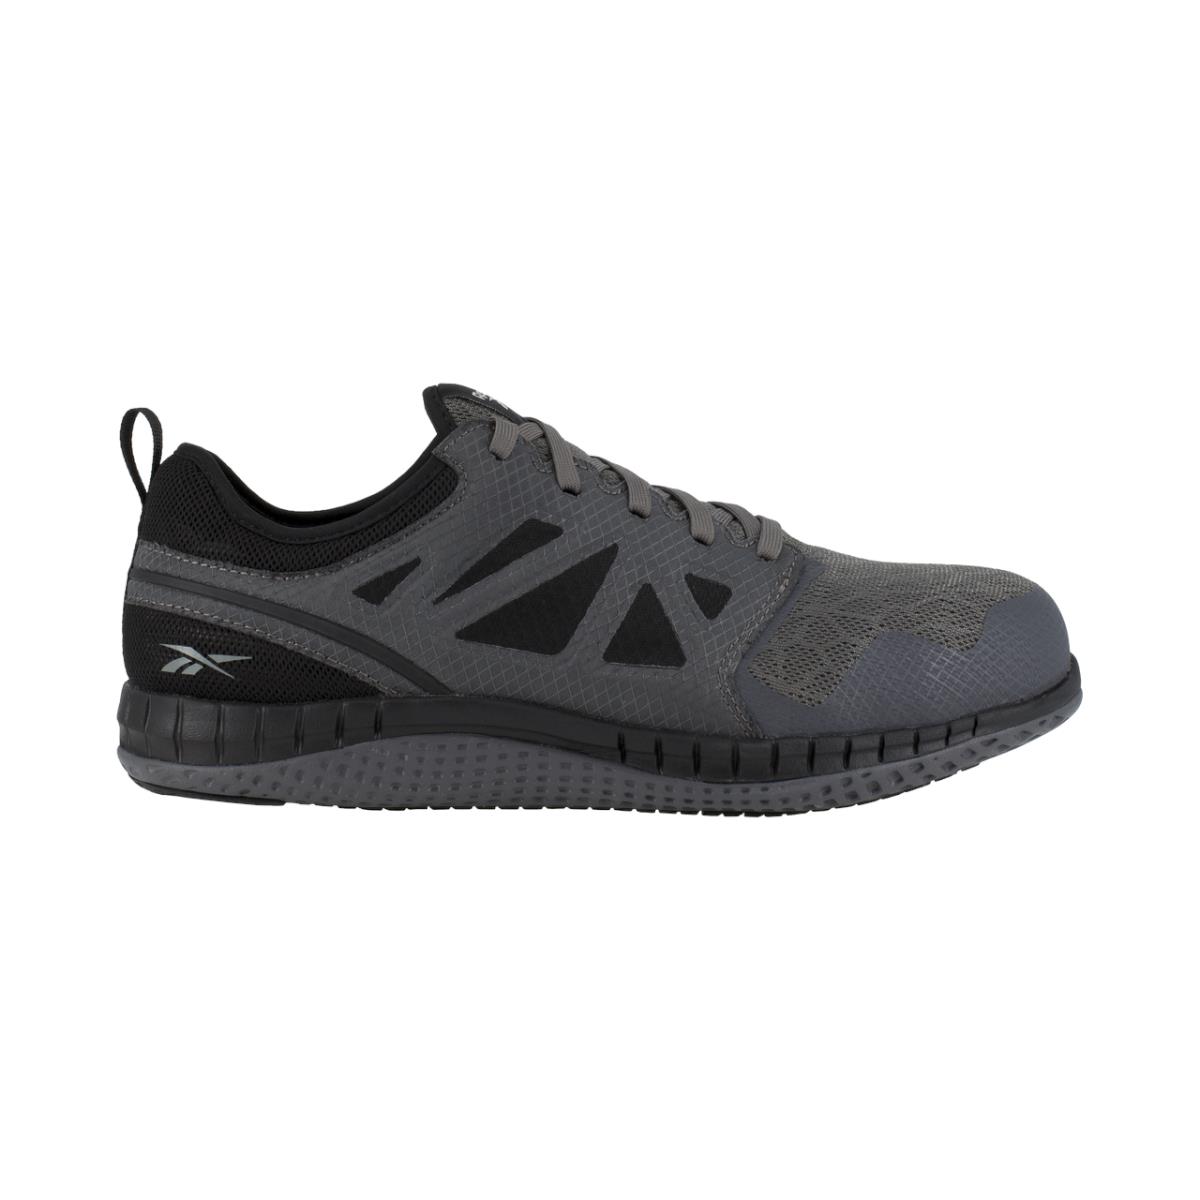 Reebok Athletic Work Shoe Z Print Steel Toe Gray Men Size 11.5 M RB4252